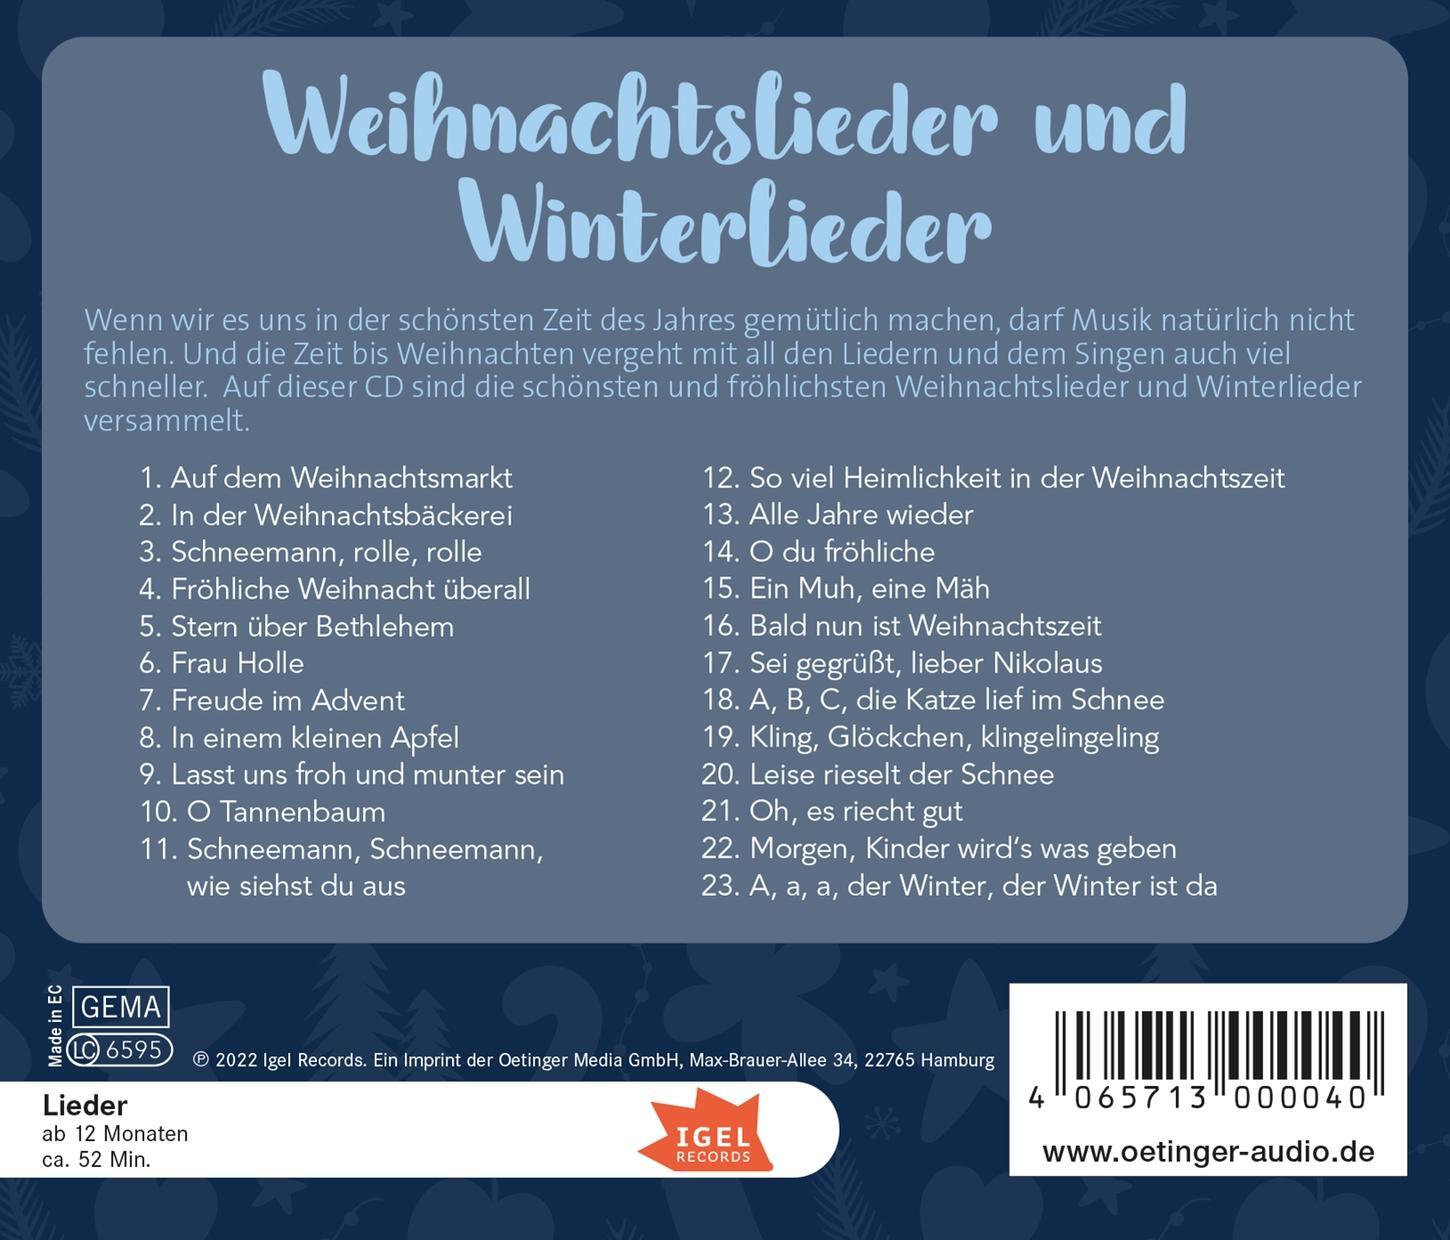 Rückseite: 4065713000040 | Weihnachtslieder und Winterlieder | Kay Poppe (u. a.) | Audio-CD